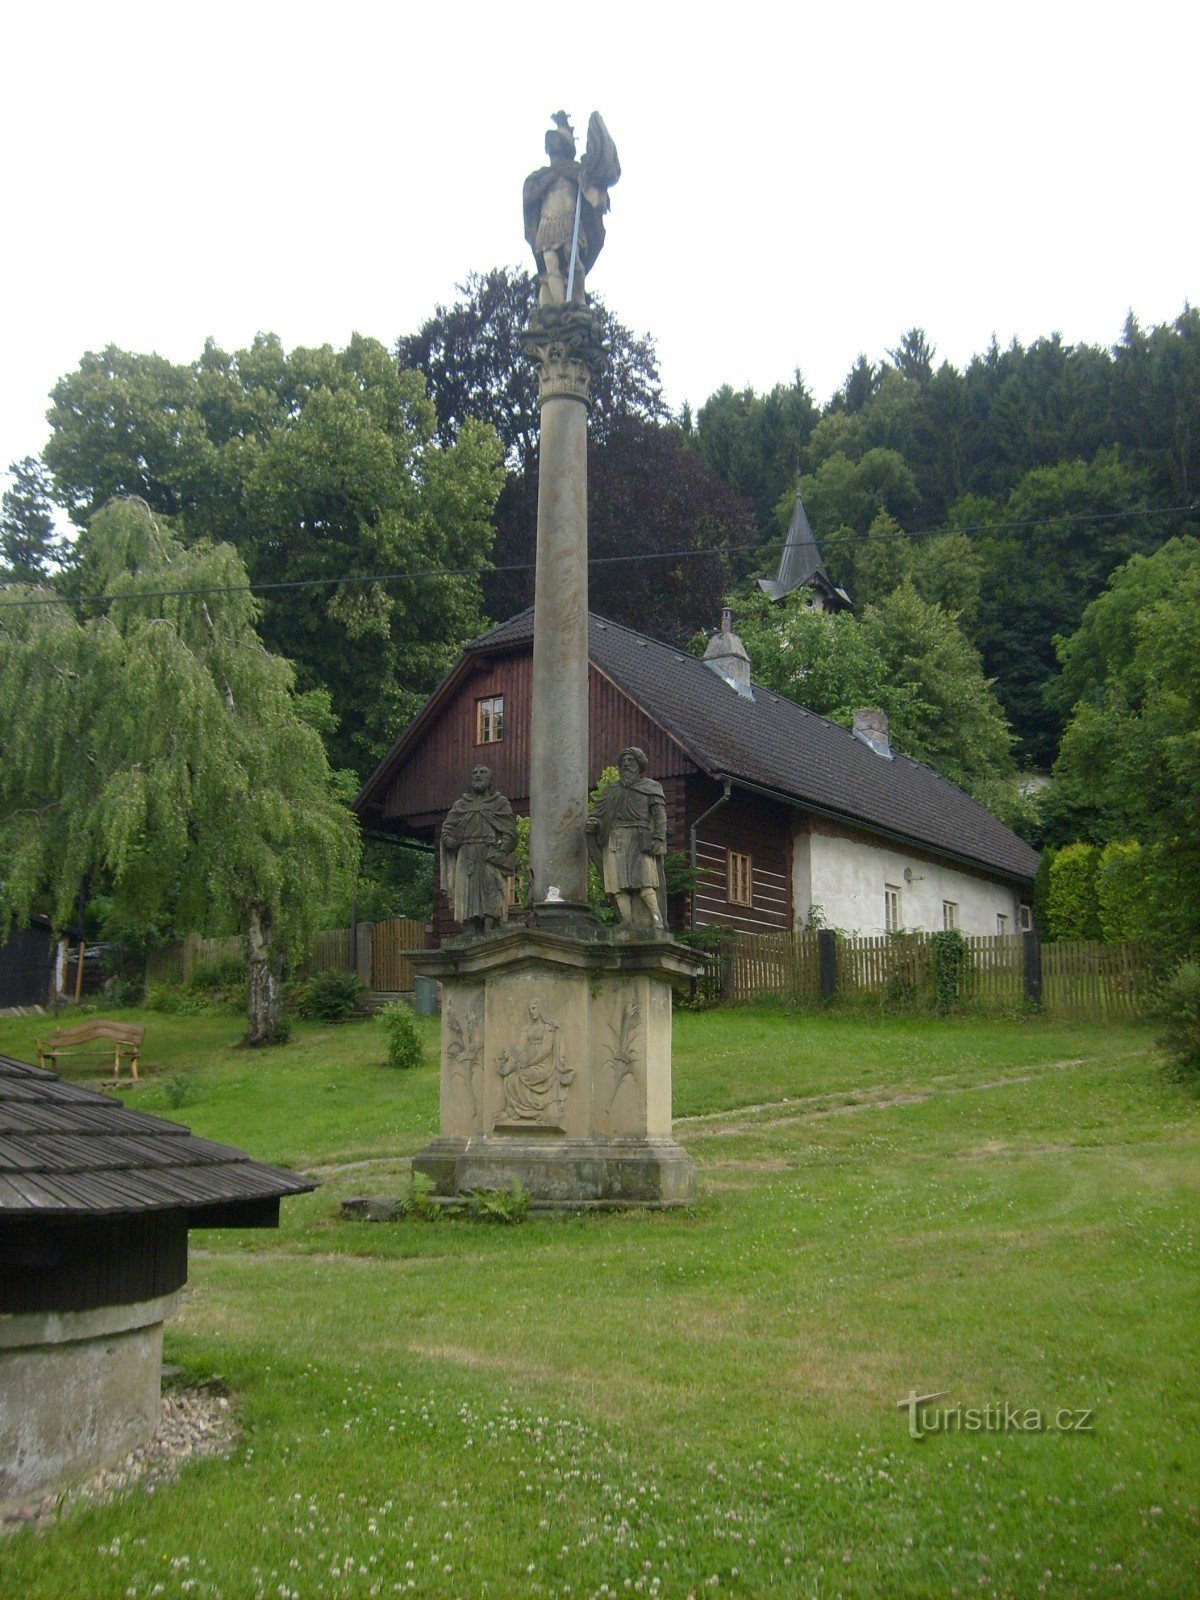 ポトステイン村のマリアン柱